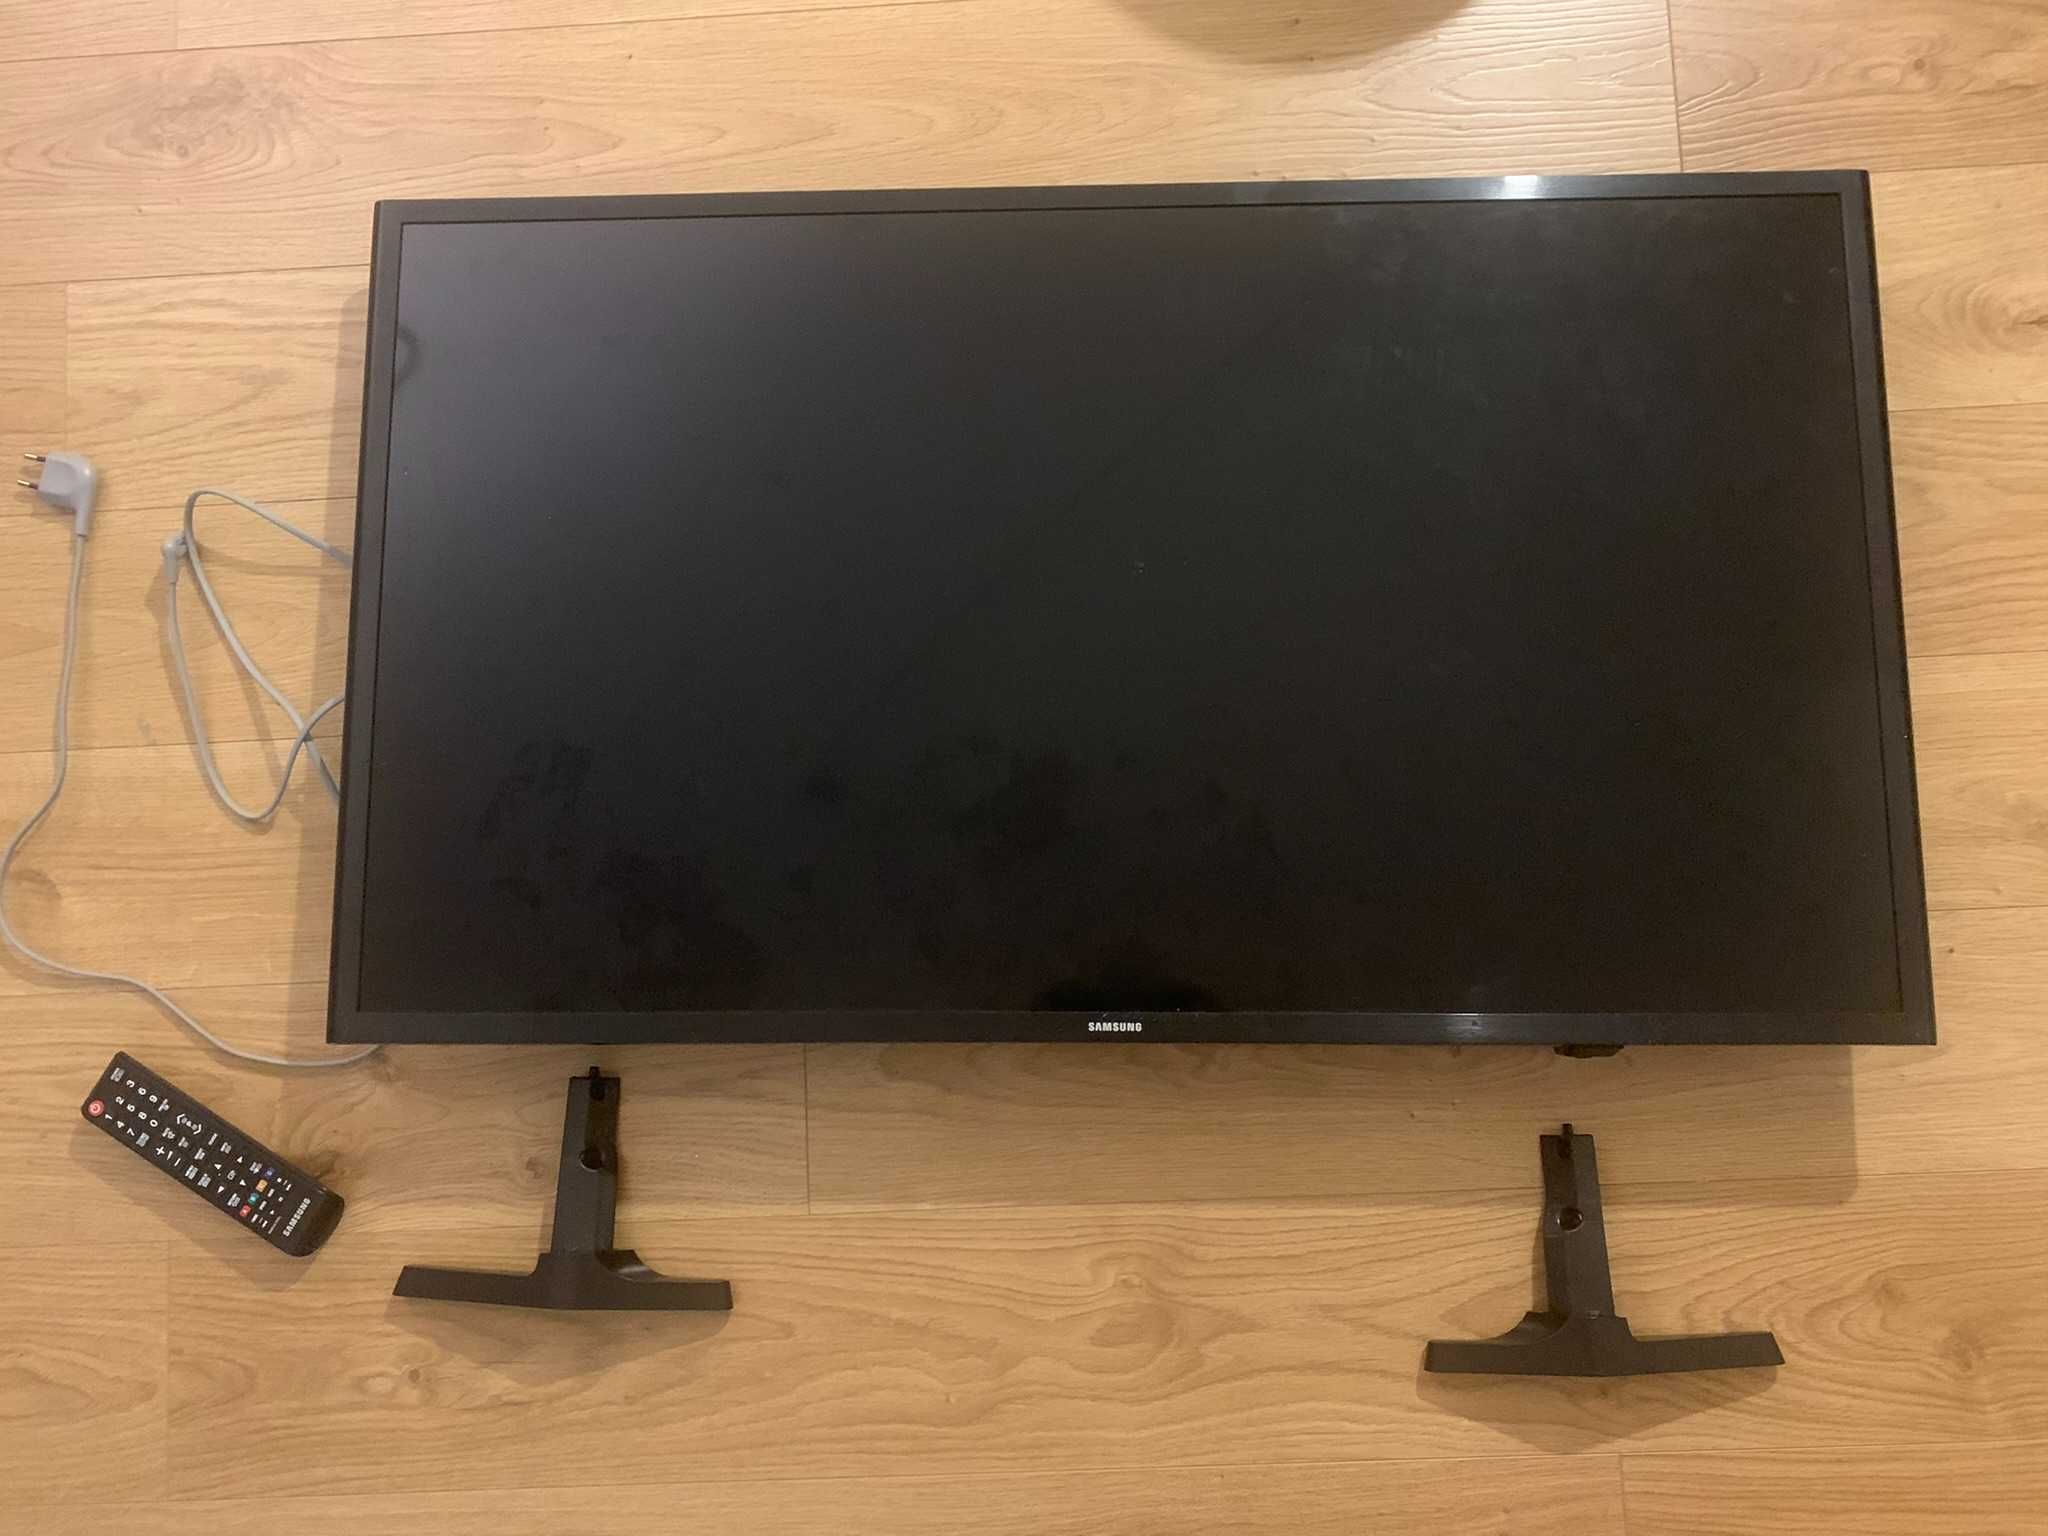 TV Samsung ue40j5200AW - uszkodzony ekran